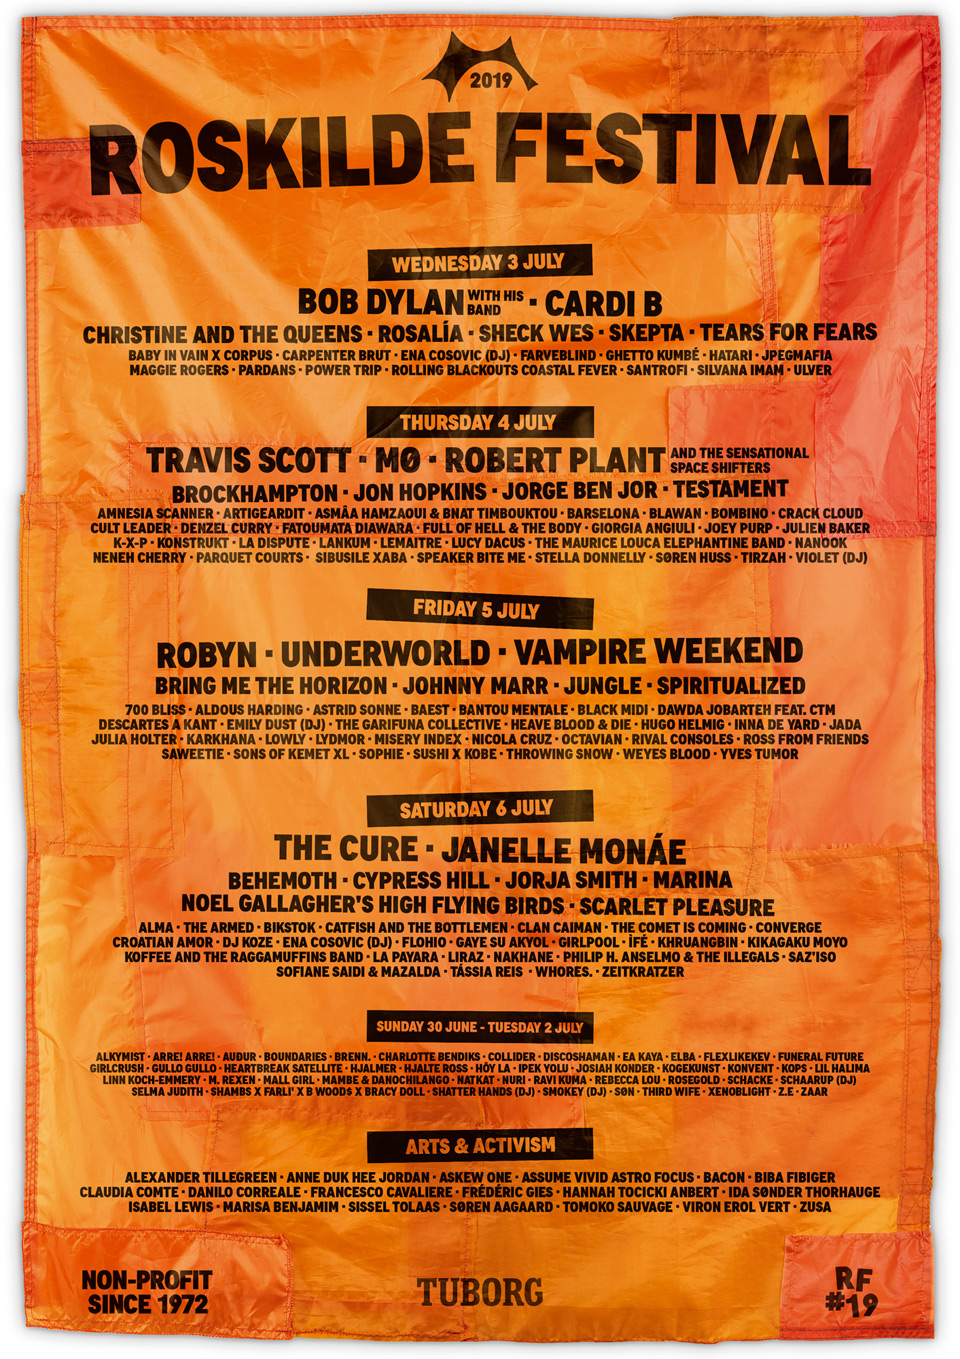  Roskilde Festival 2019  lineup